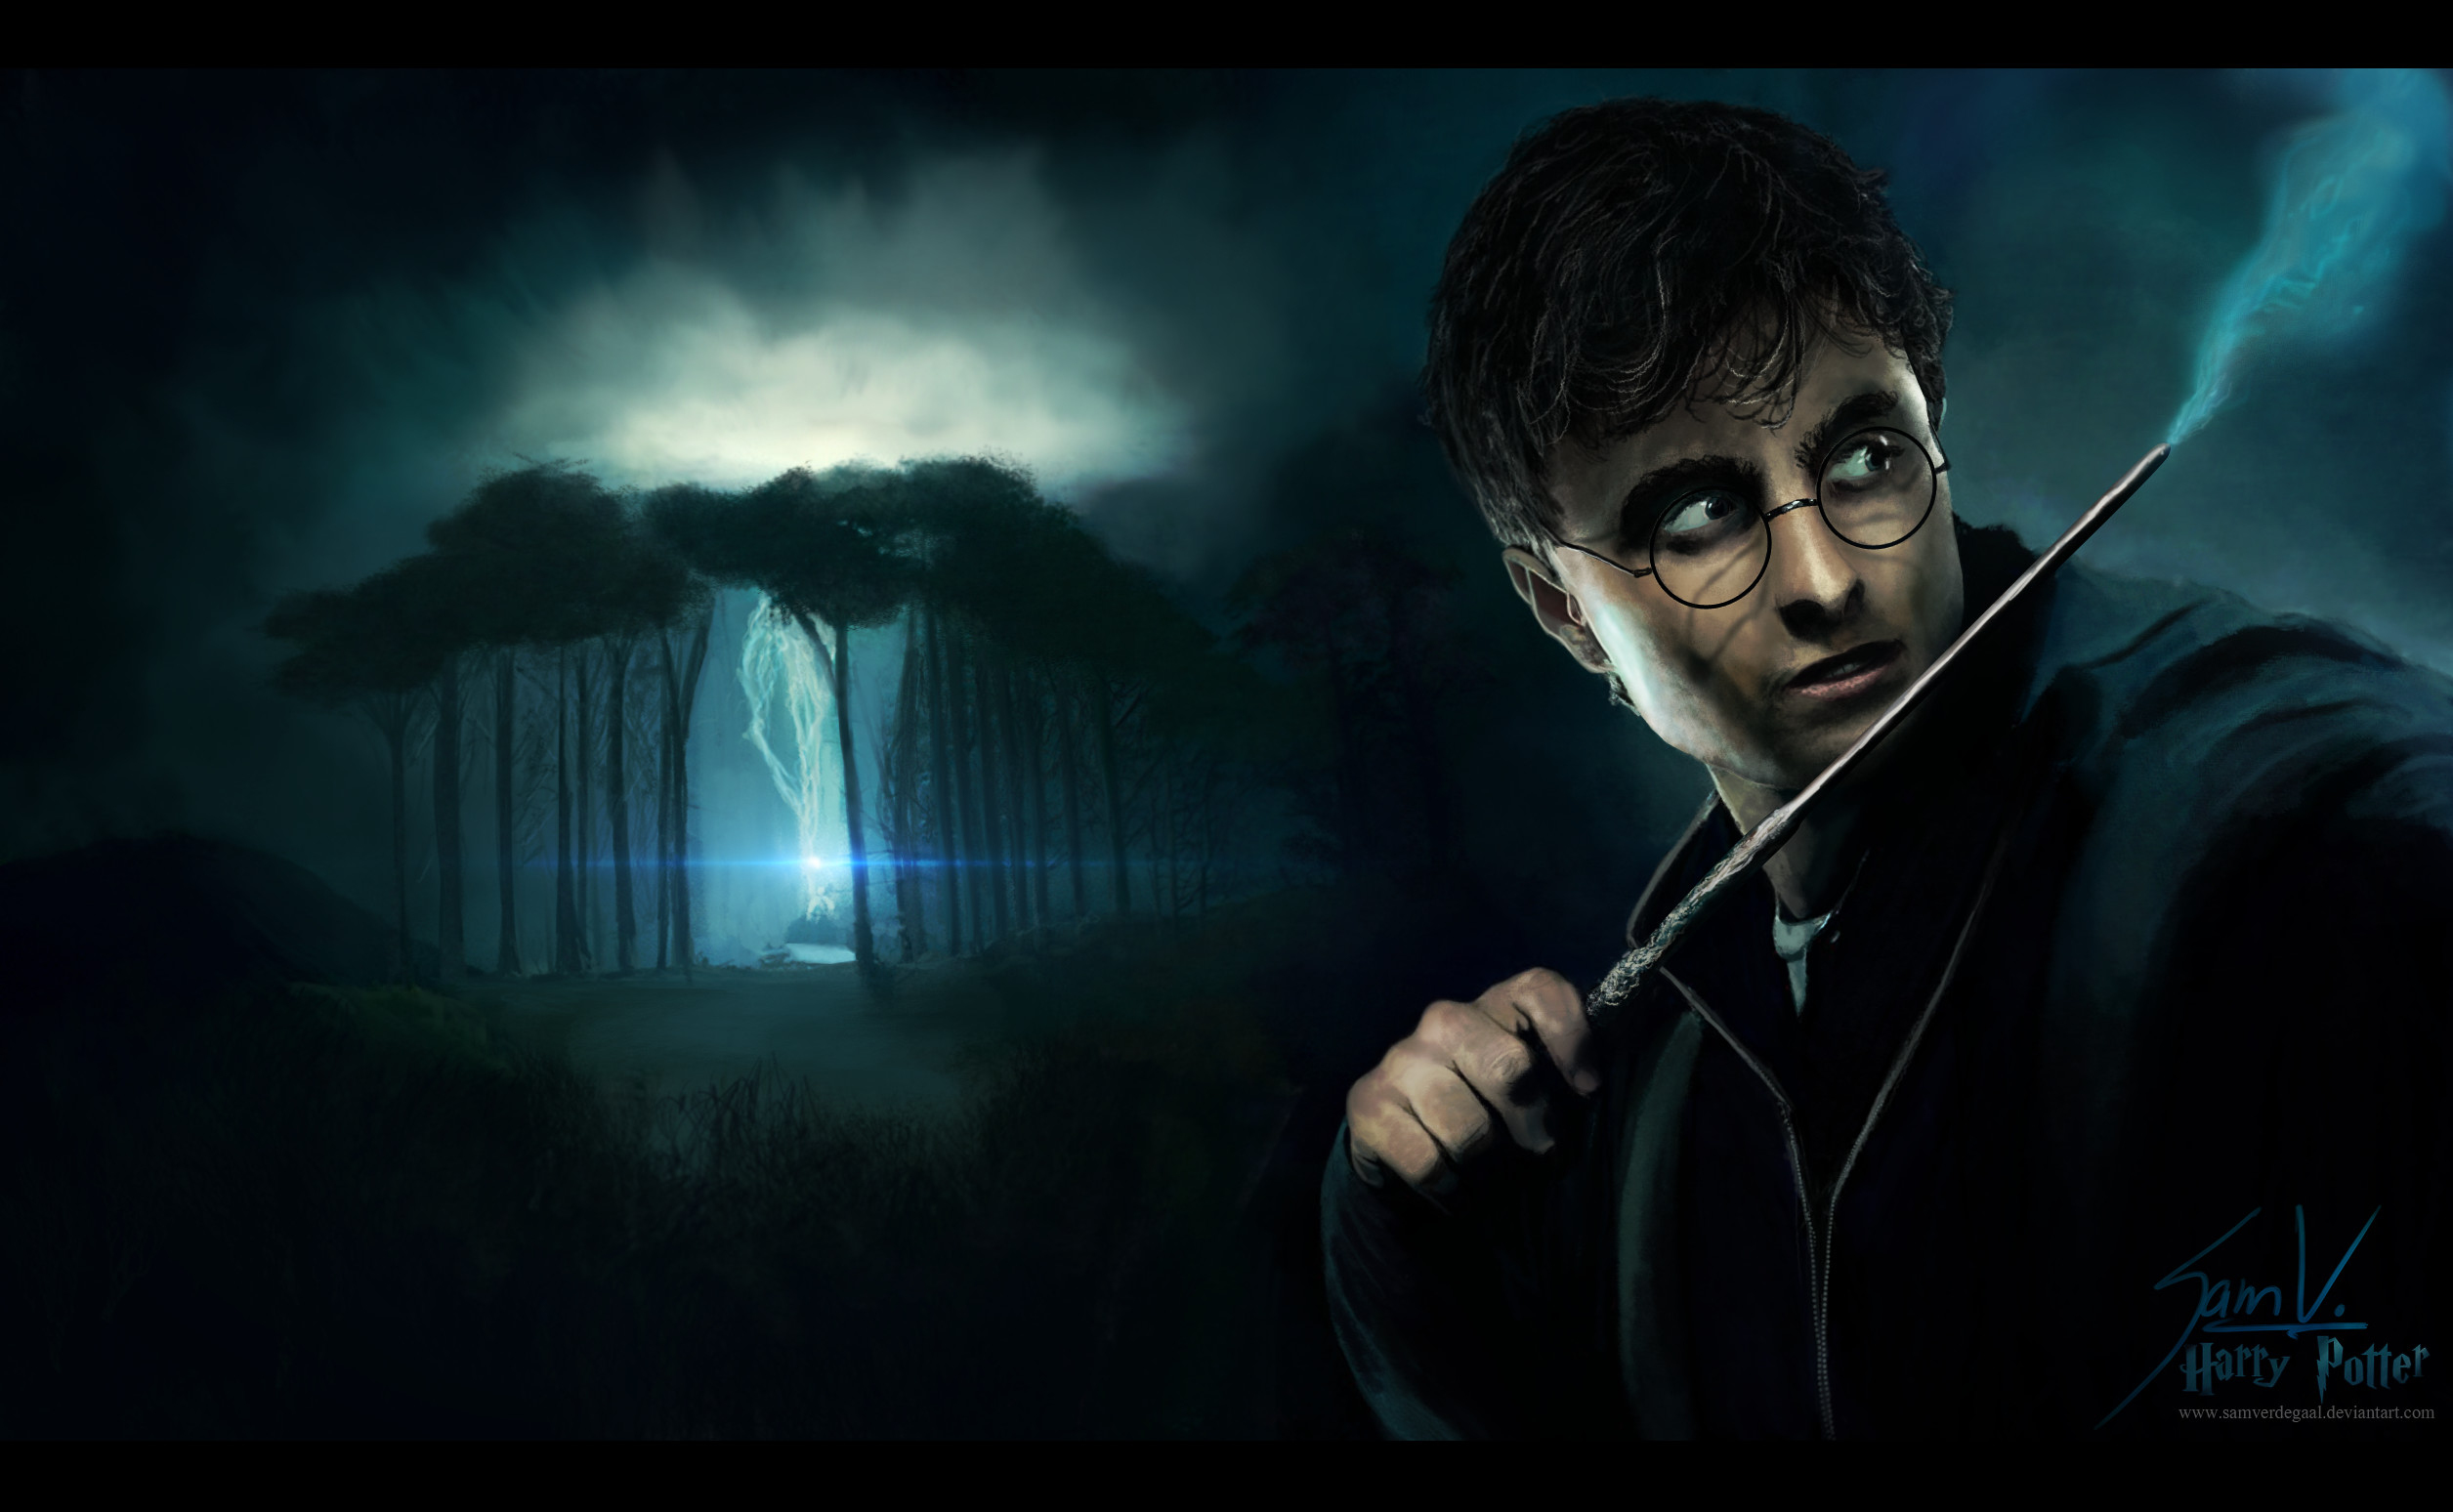 Harry Potter – Wallpaper by SamVerdegaal Harry Potter – Wallpaper by  SamVerdegaal